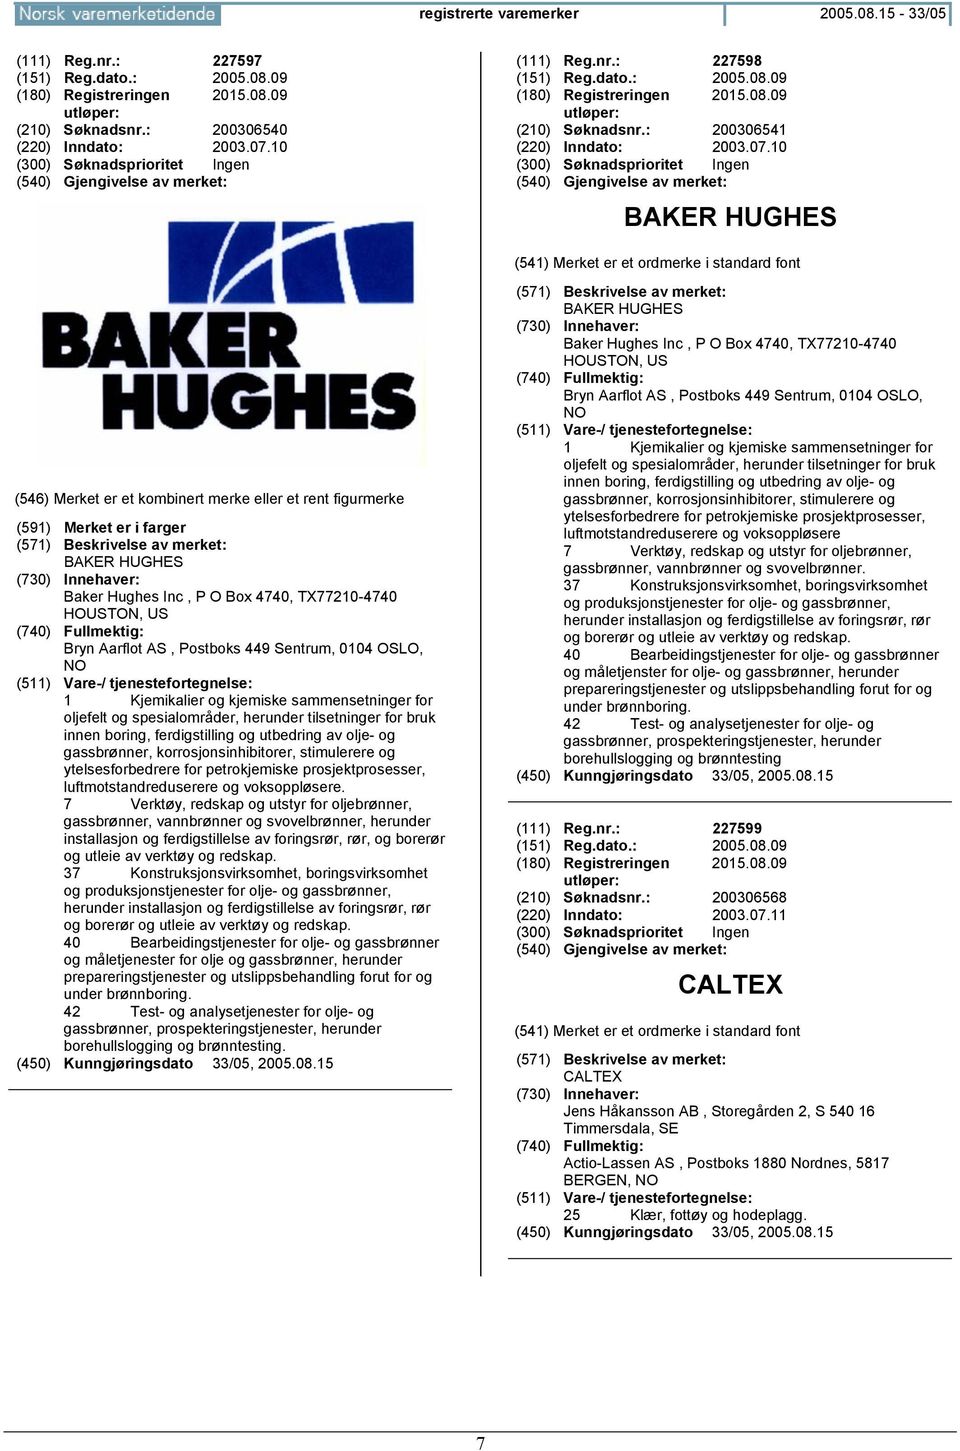 10 BAKER HUGHES (591) Merket er i farger BAKER HUGHES Baker Hughes Inc, P O Box 4740, TX77210-4740 HOUSTON, US Bryn Aarflot AS, Postboks 449 Sentrum, 0104 OSLO, 1 Kjemikalier og kjemiske